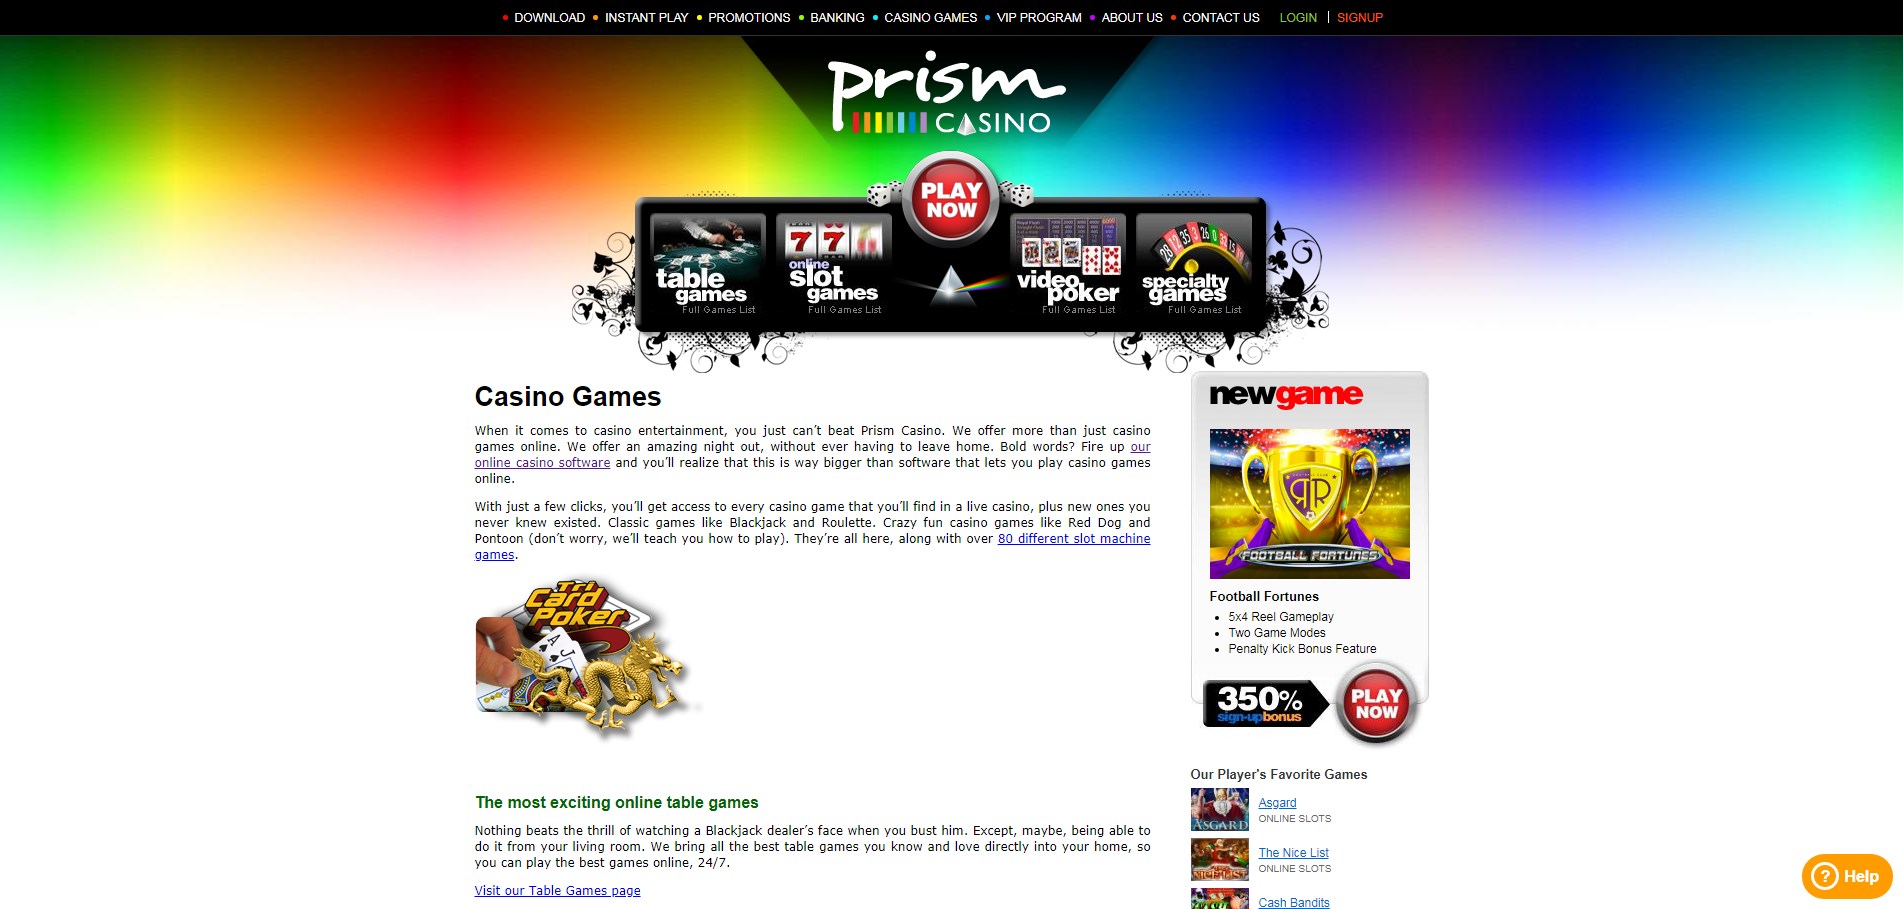 Prism Casino Games